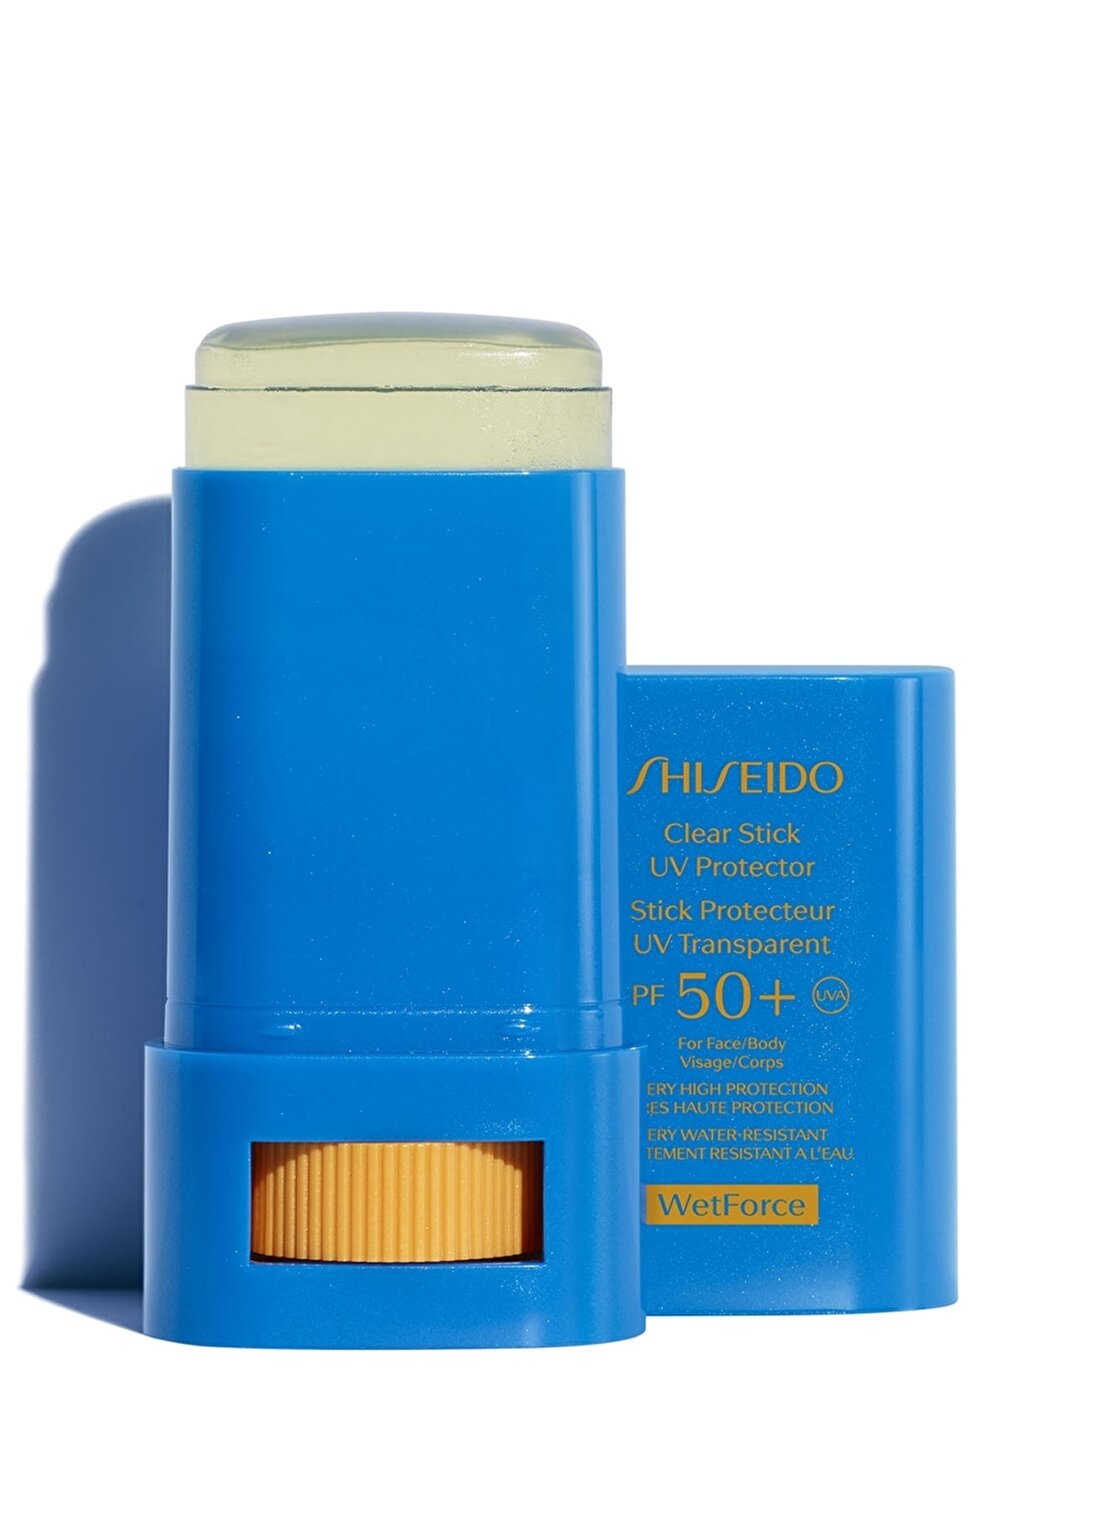 Shiseido Spf 50 Korumalı Yüz Ve Vucüt İçin Şeffaf Stik Güneş Ürünü